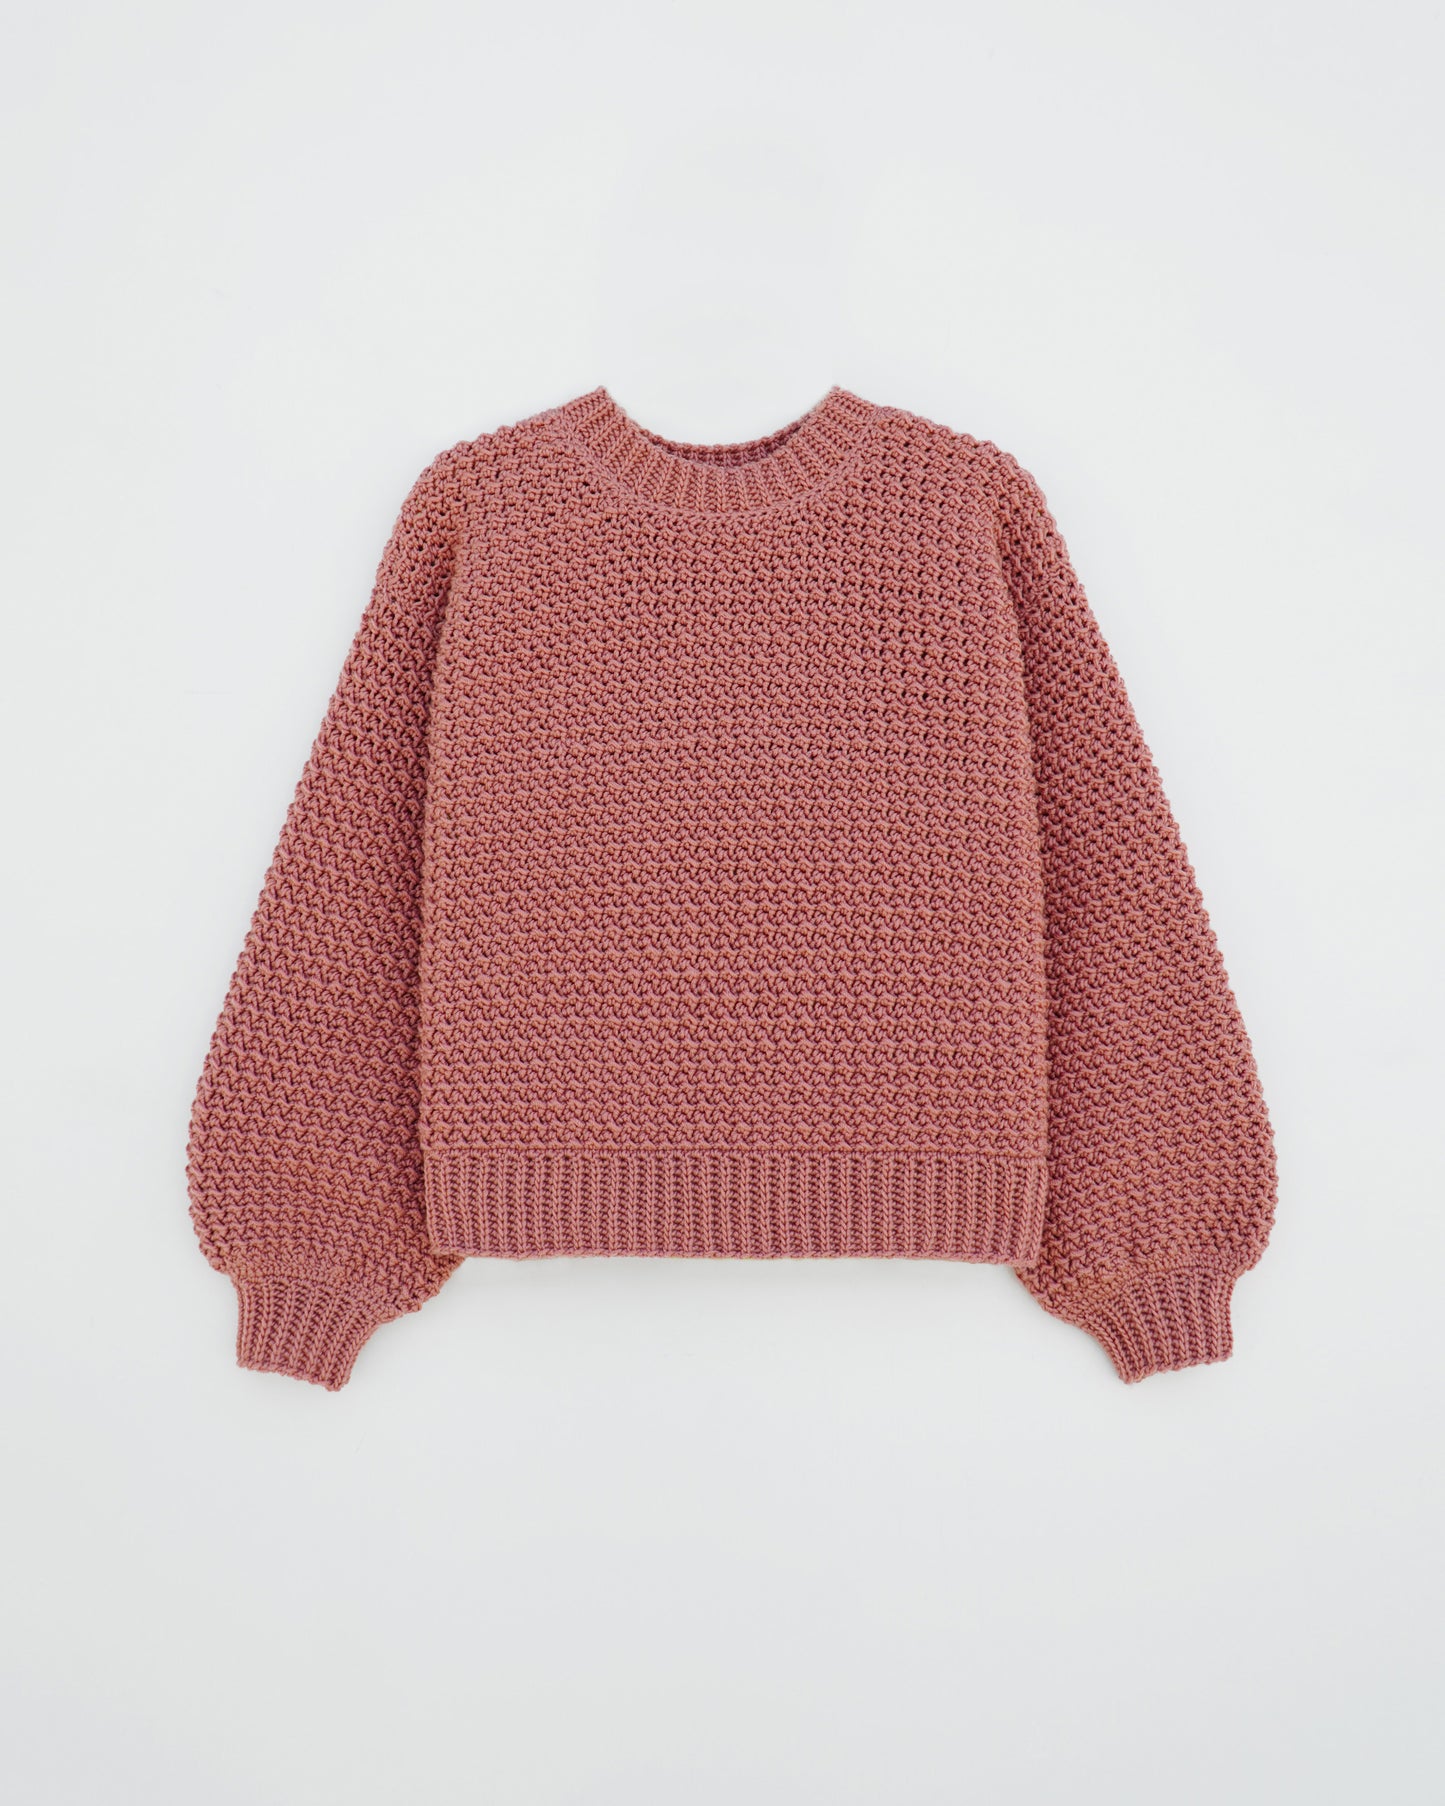 Kids' Sweater No.7 | Easy crochet pattern